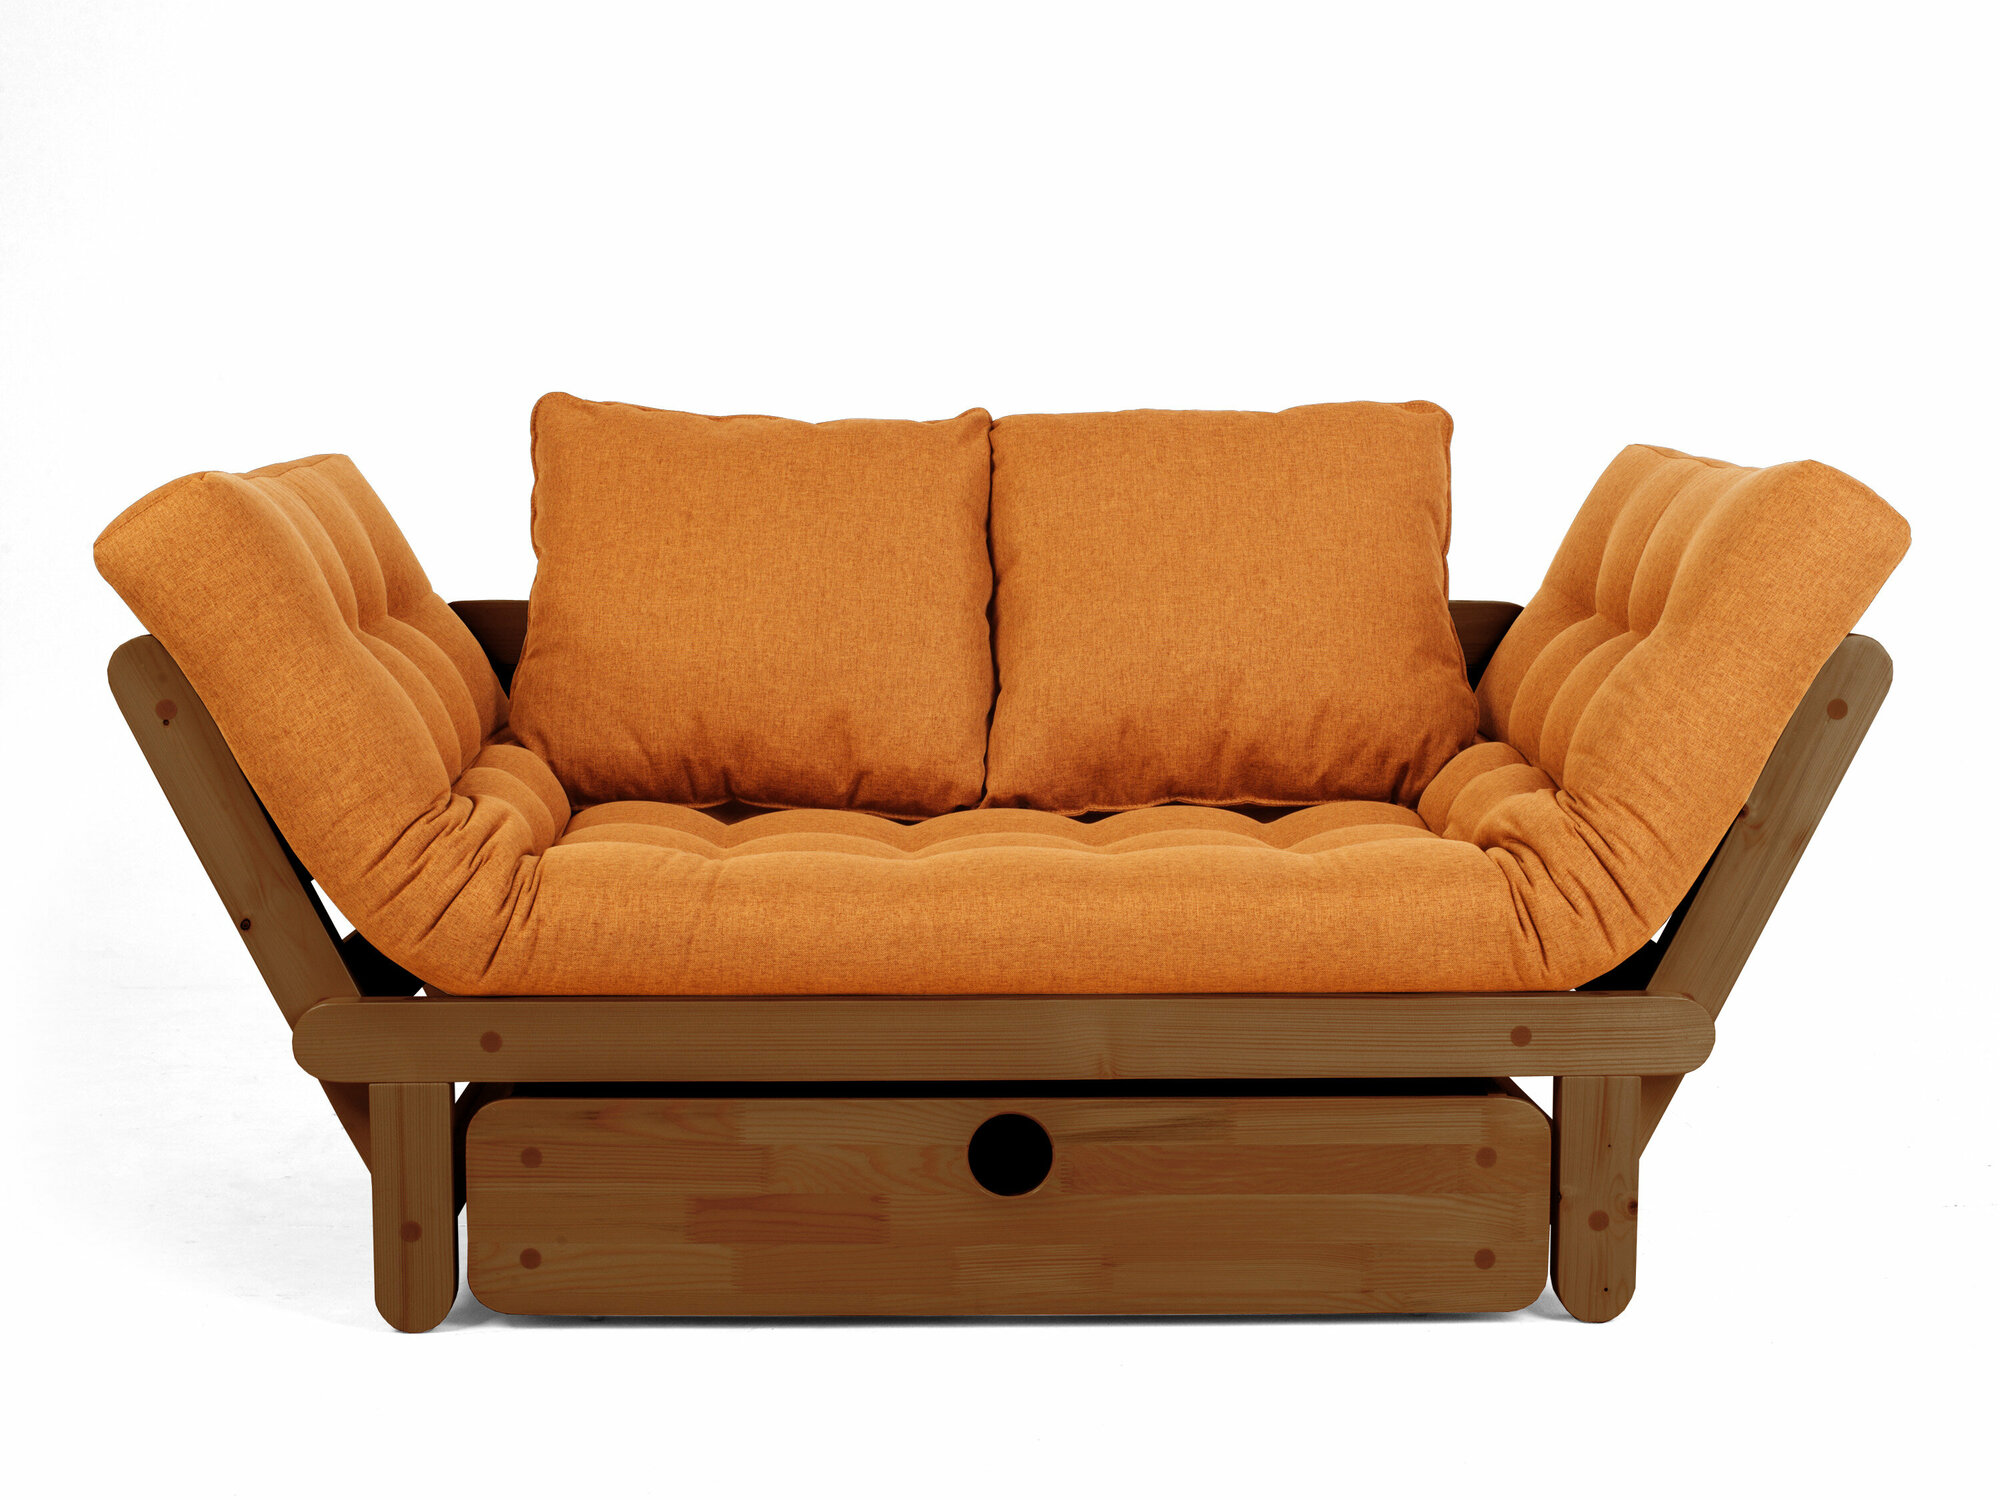 Маленький диван сламбер BOX, оранжевый-орех, рогожка, массив дерева, офисный, садовый, для кафе и бара, в гостиную, на ножках, скандинавский лофт